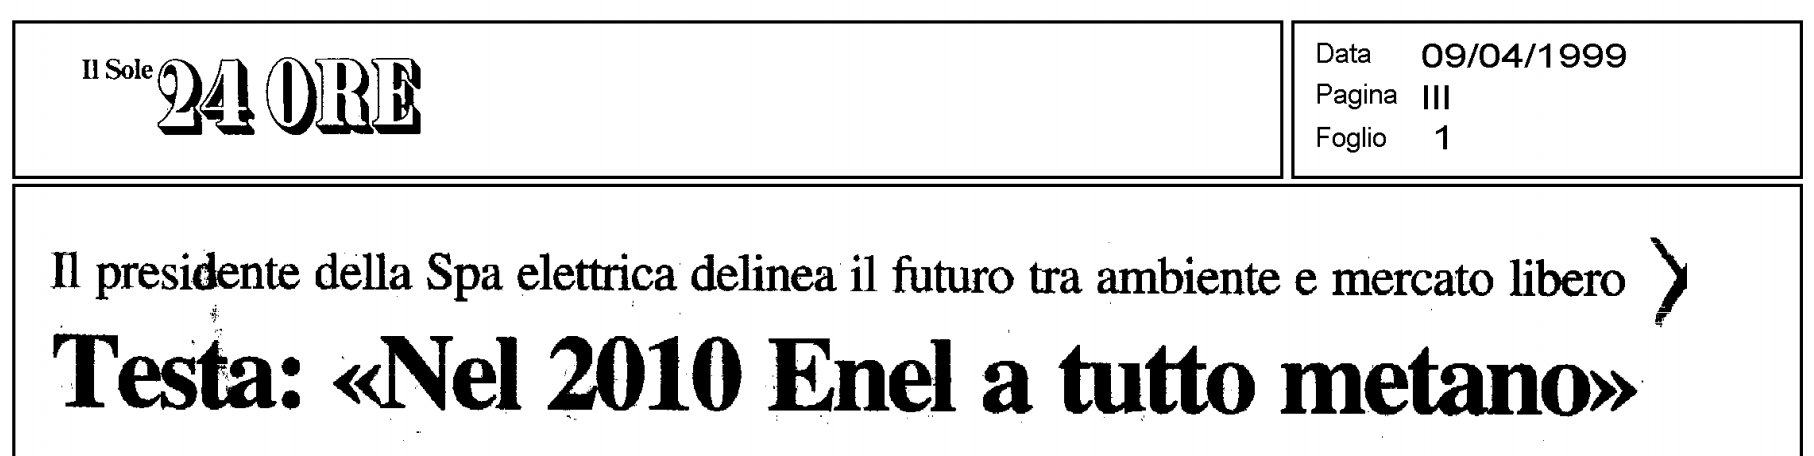 La "previsione" (sbagliata) dell'allora presidente di Enel, Chicco Testa. Era l'aprile del 1999